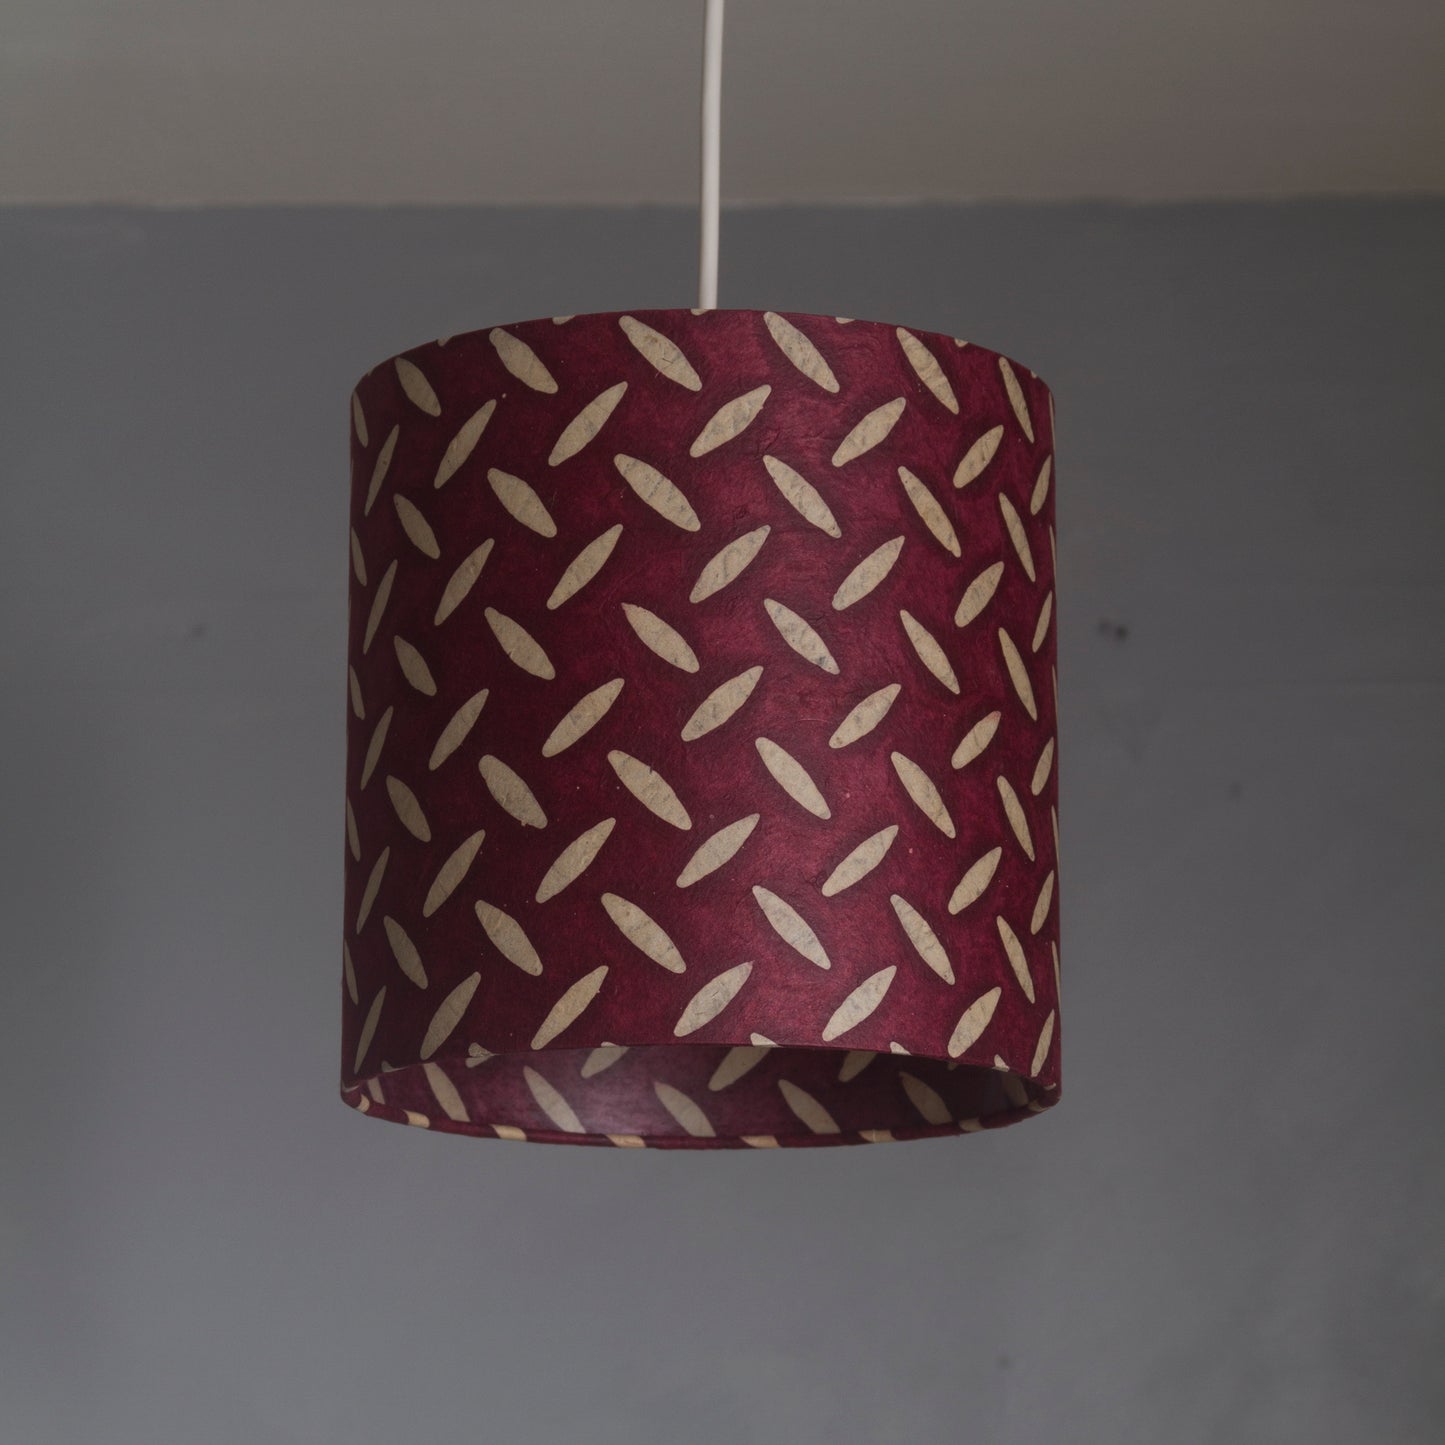 Square Lamp Shade - P14 - Batik Tread Plate Cranberry, 40cm(w) x 40cm(h) x 40cm(d)